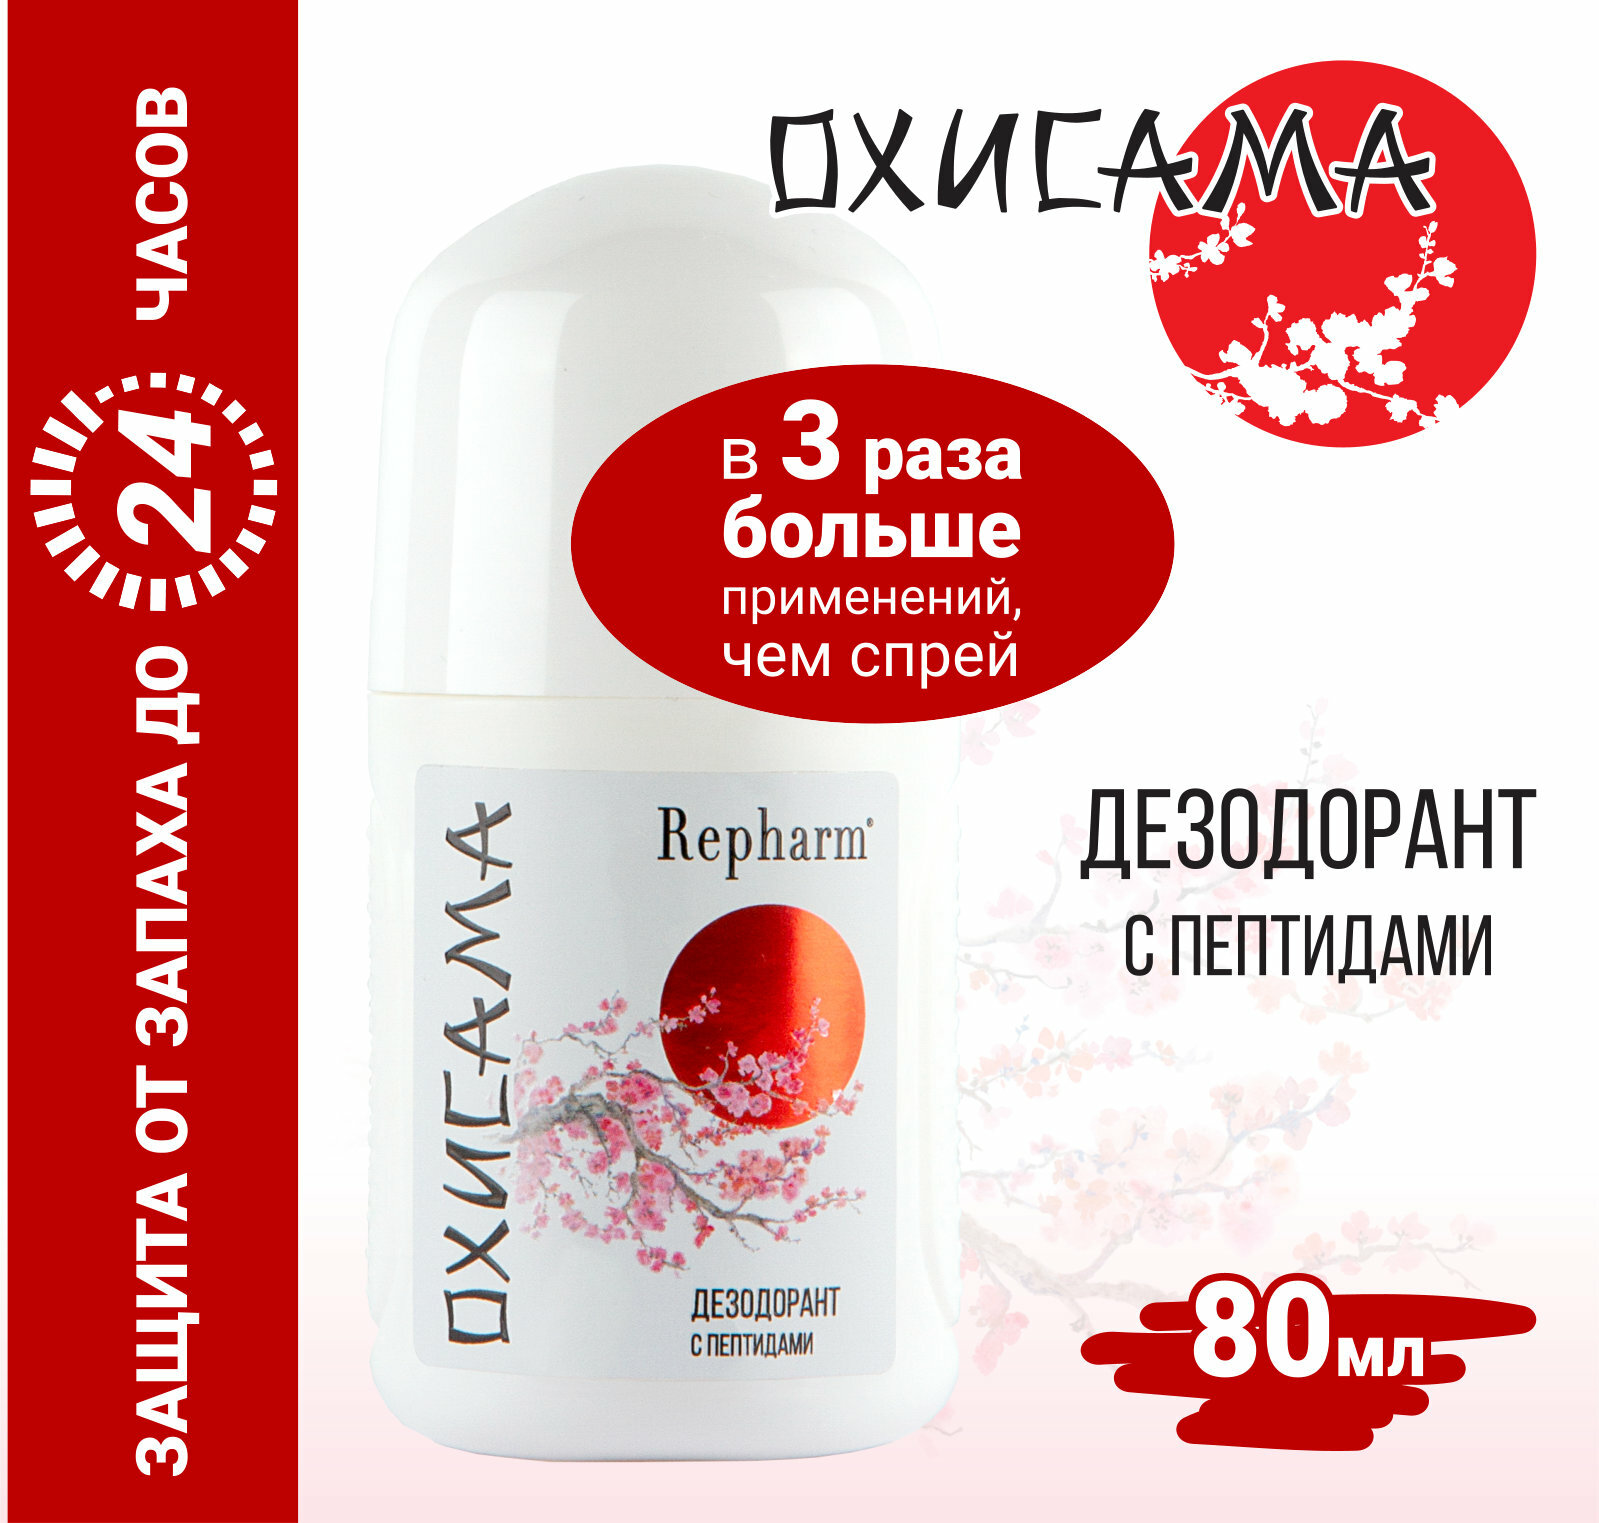 Дезодорант Repharm с пептидами «Охисама», не содержит алюминий и его соли, спирт и парабены.